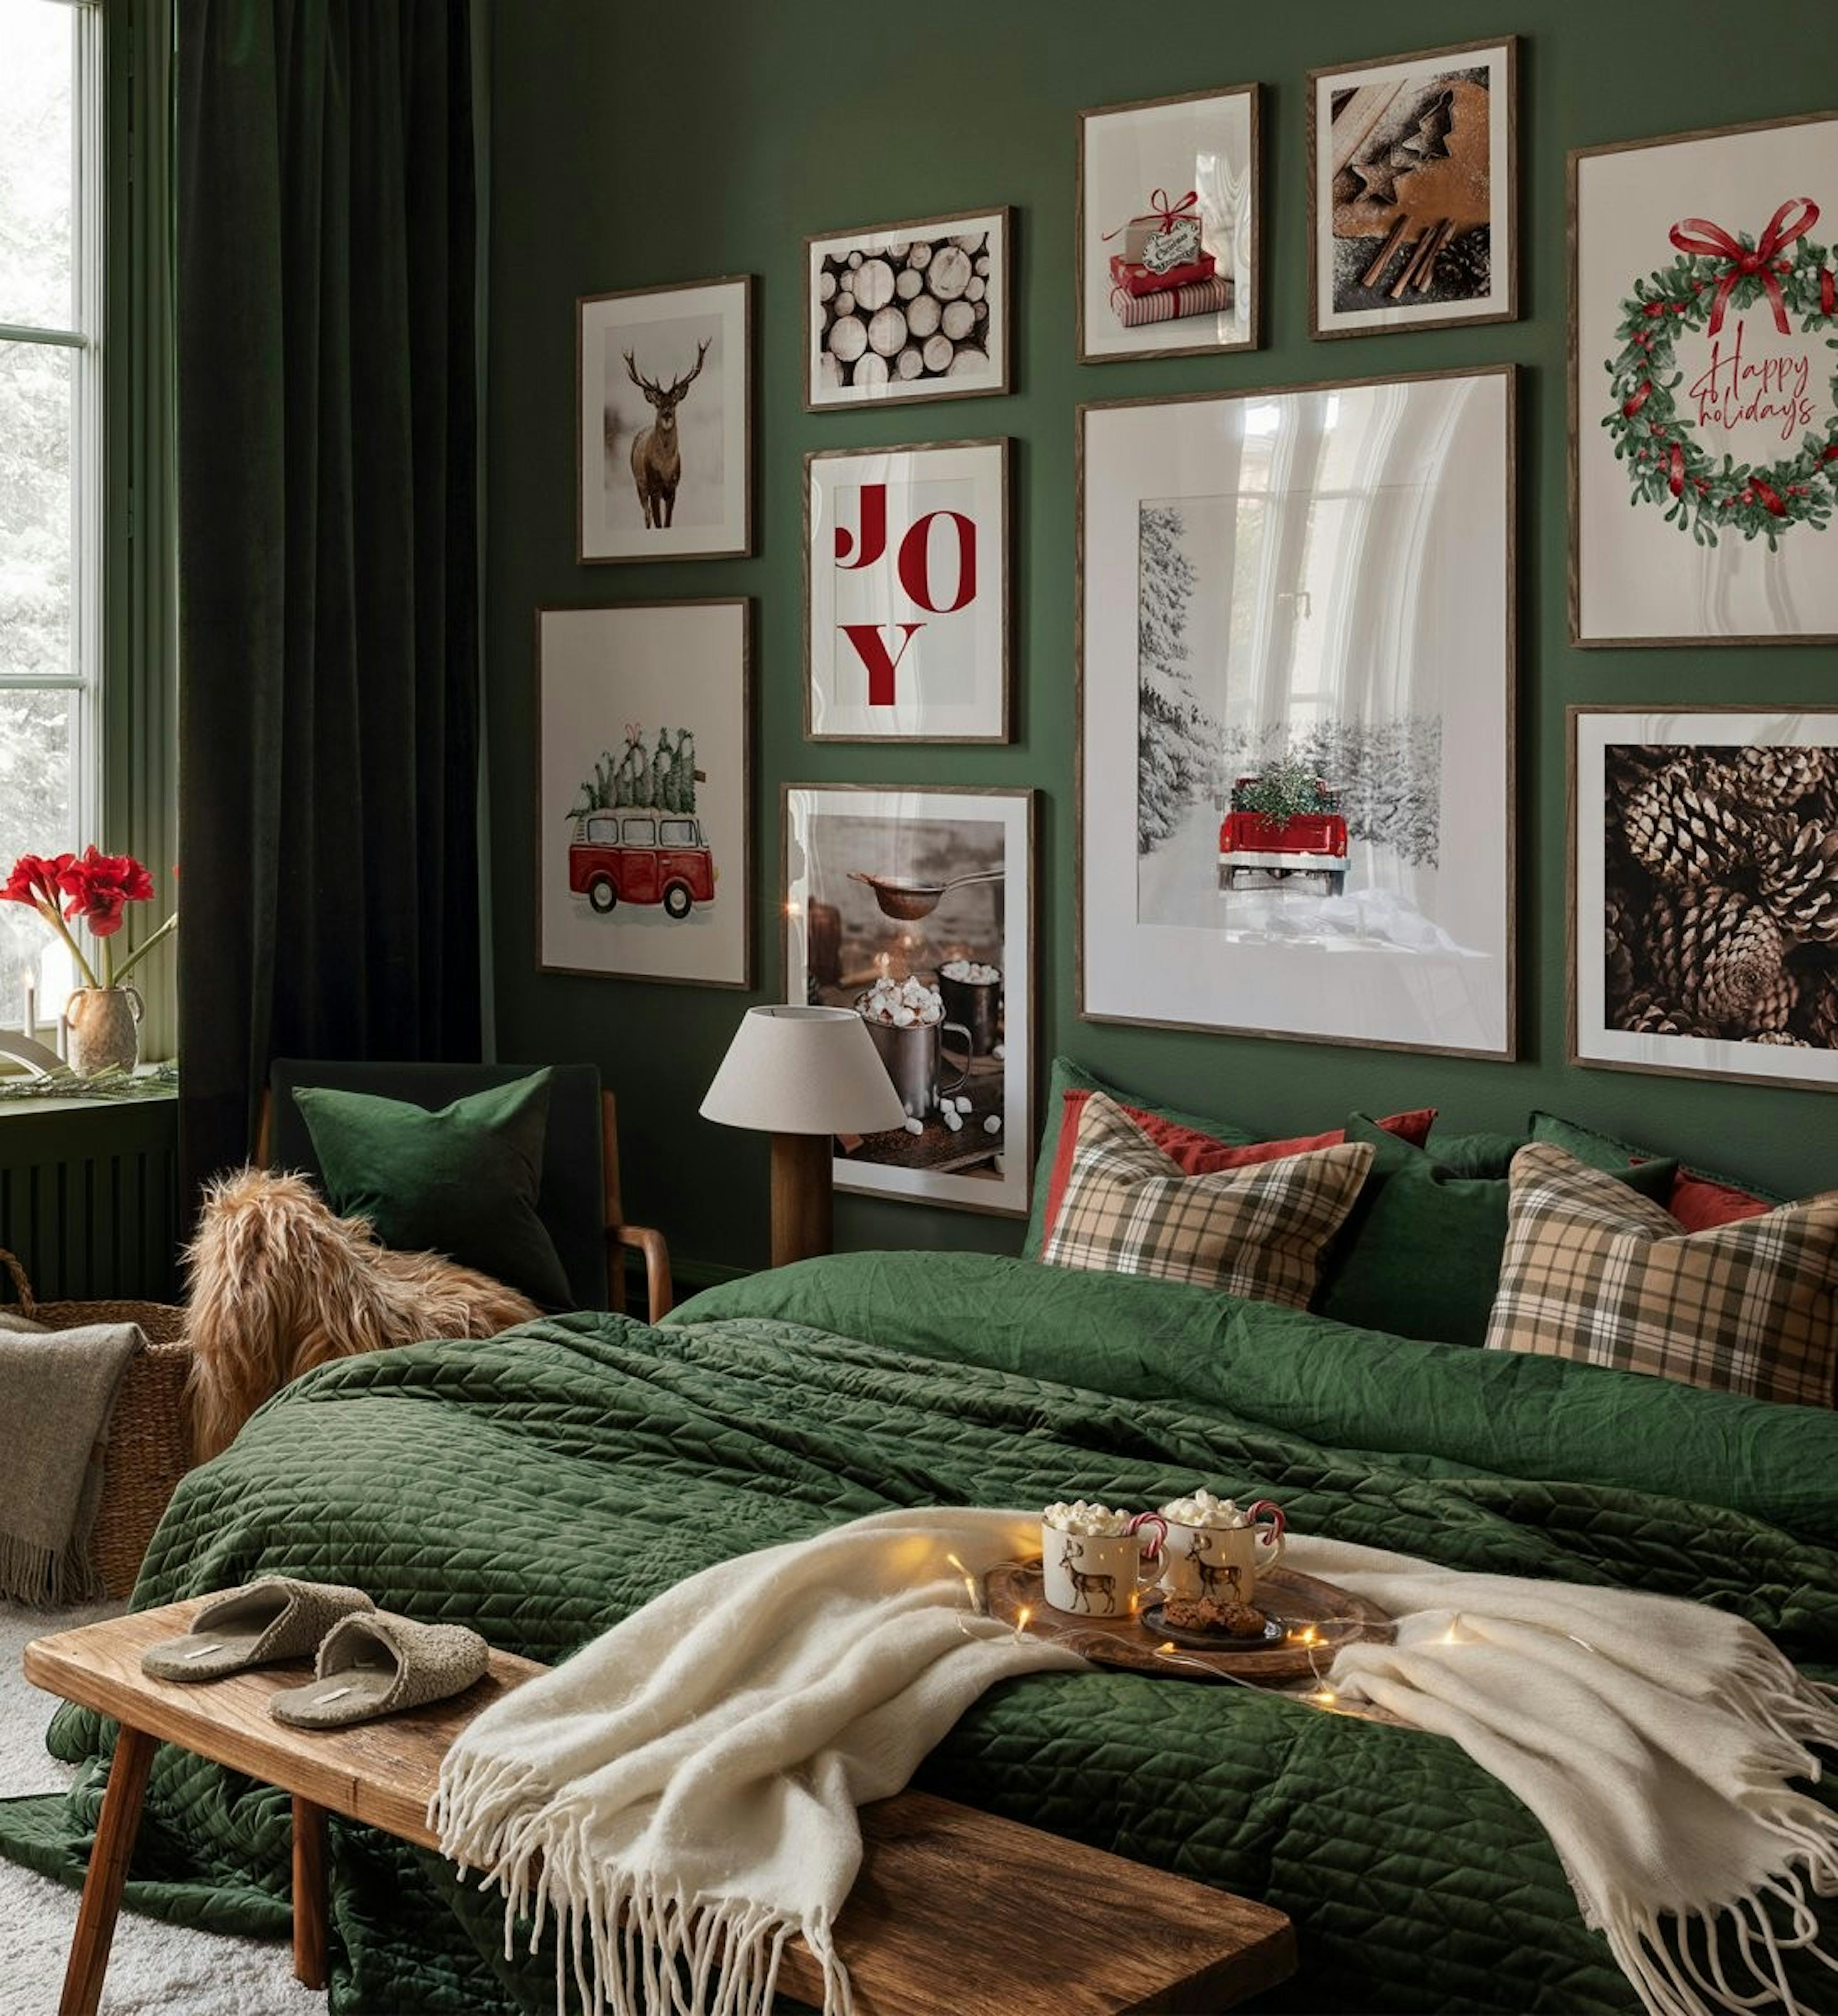 침실을 위한 짙은 오크 프레임이 있는 빨간색 및 녹색 따옴표, 사진 및 삽화가 있는 크리스마스 갤러리 벽